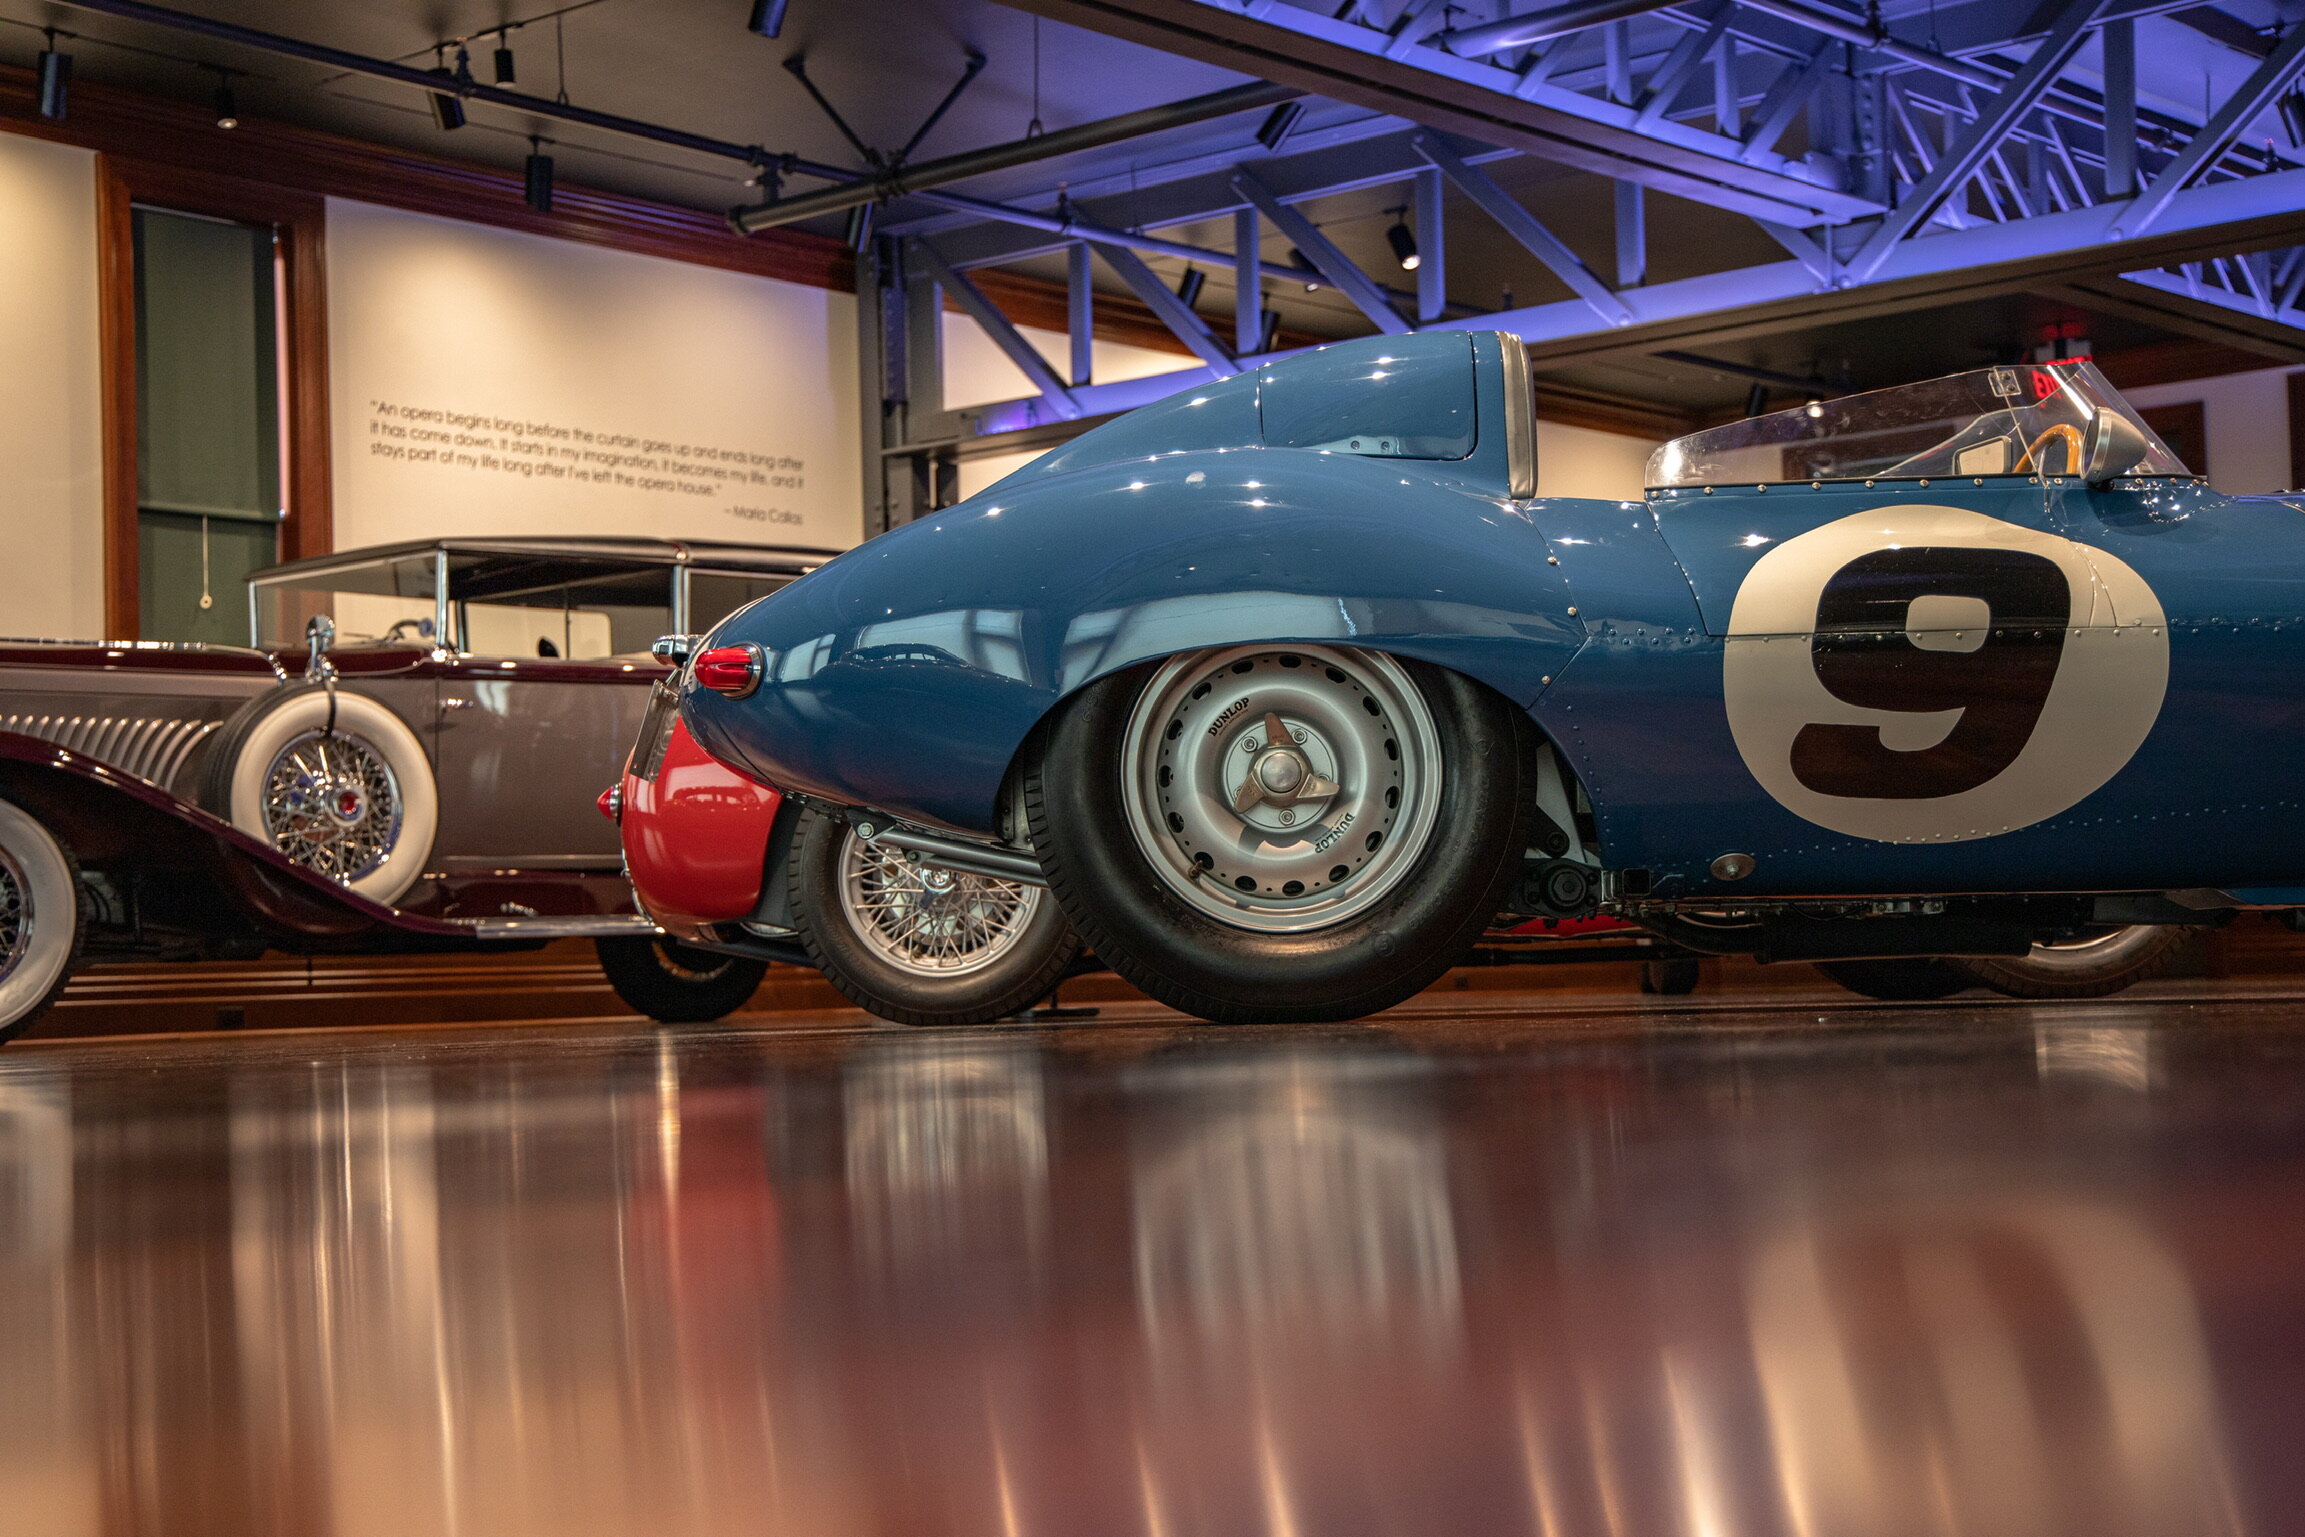 1956 Jaguar D-Type  Simeone Foundation Automotive Museum